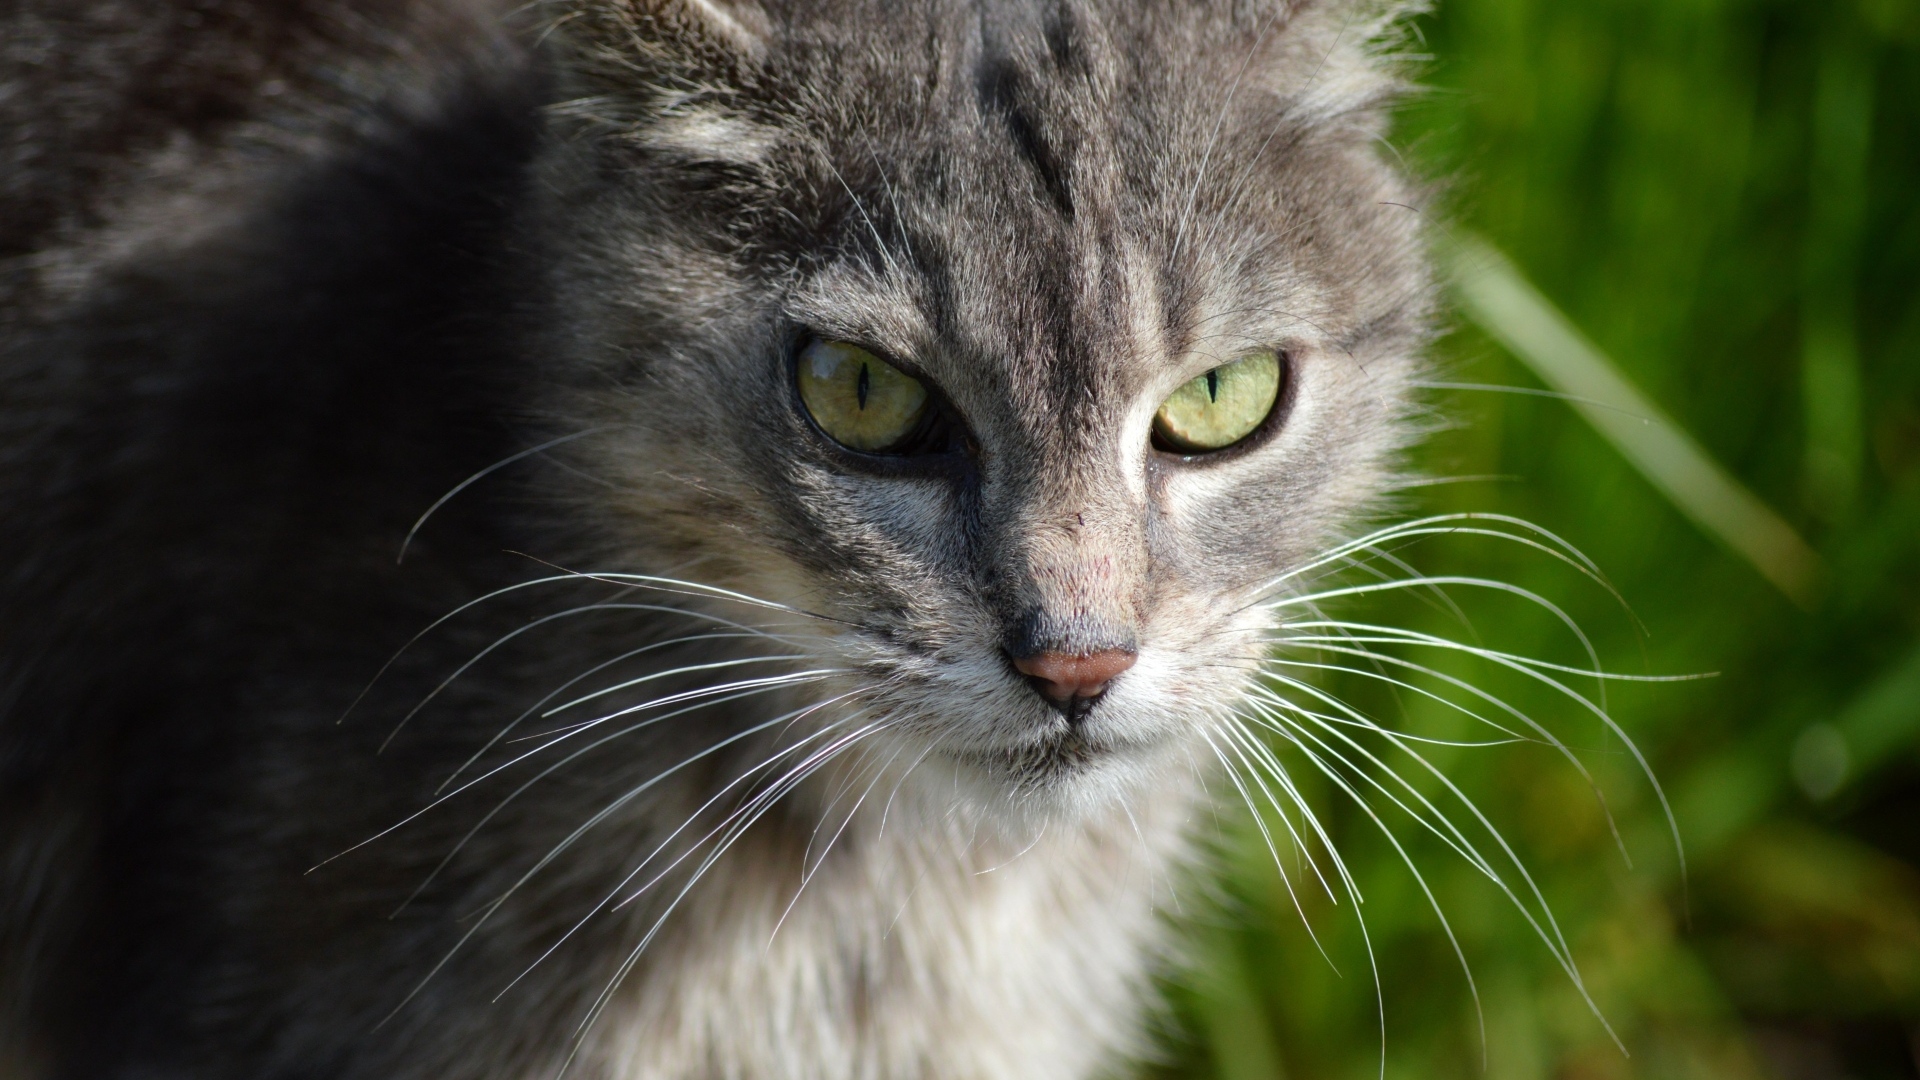 Серый кот с зелеными глазами на улице